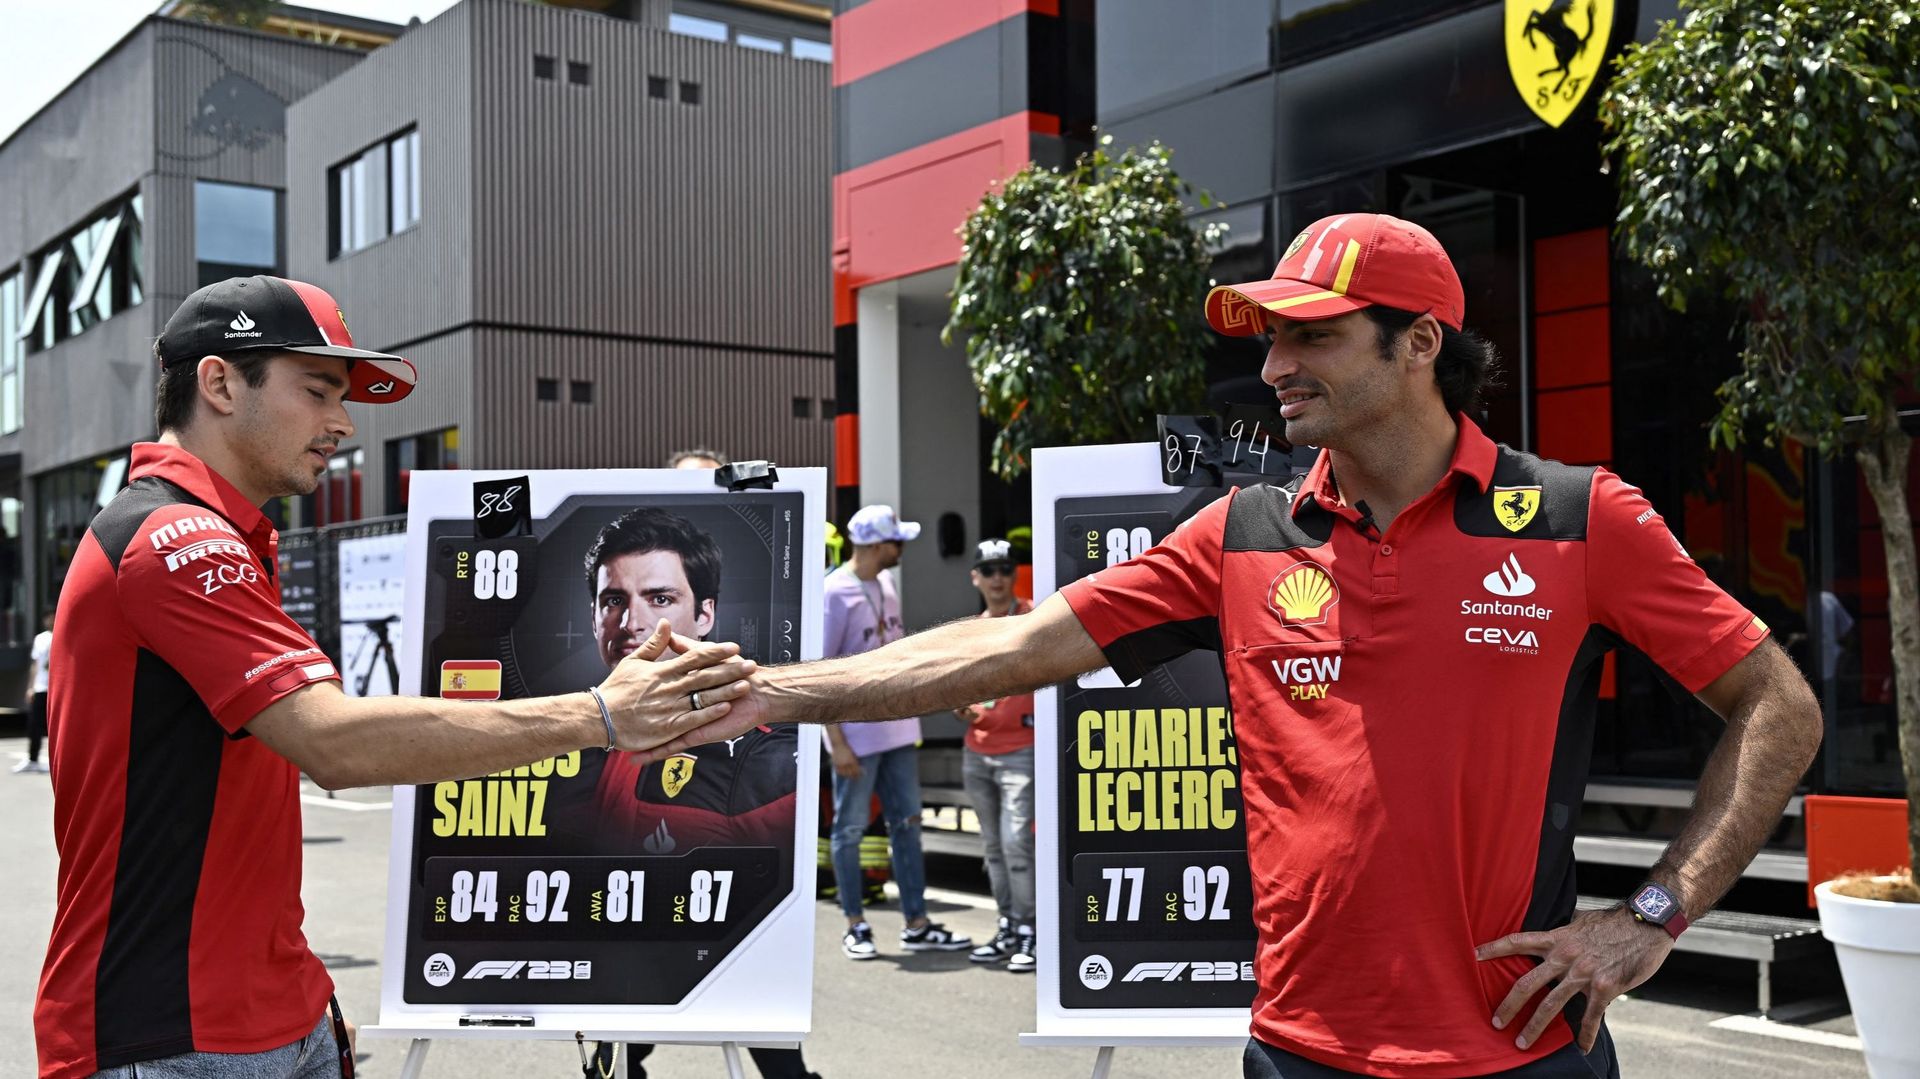 Leclerc et Sainz analysent le GP d’Espagne.